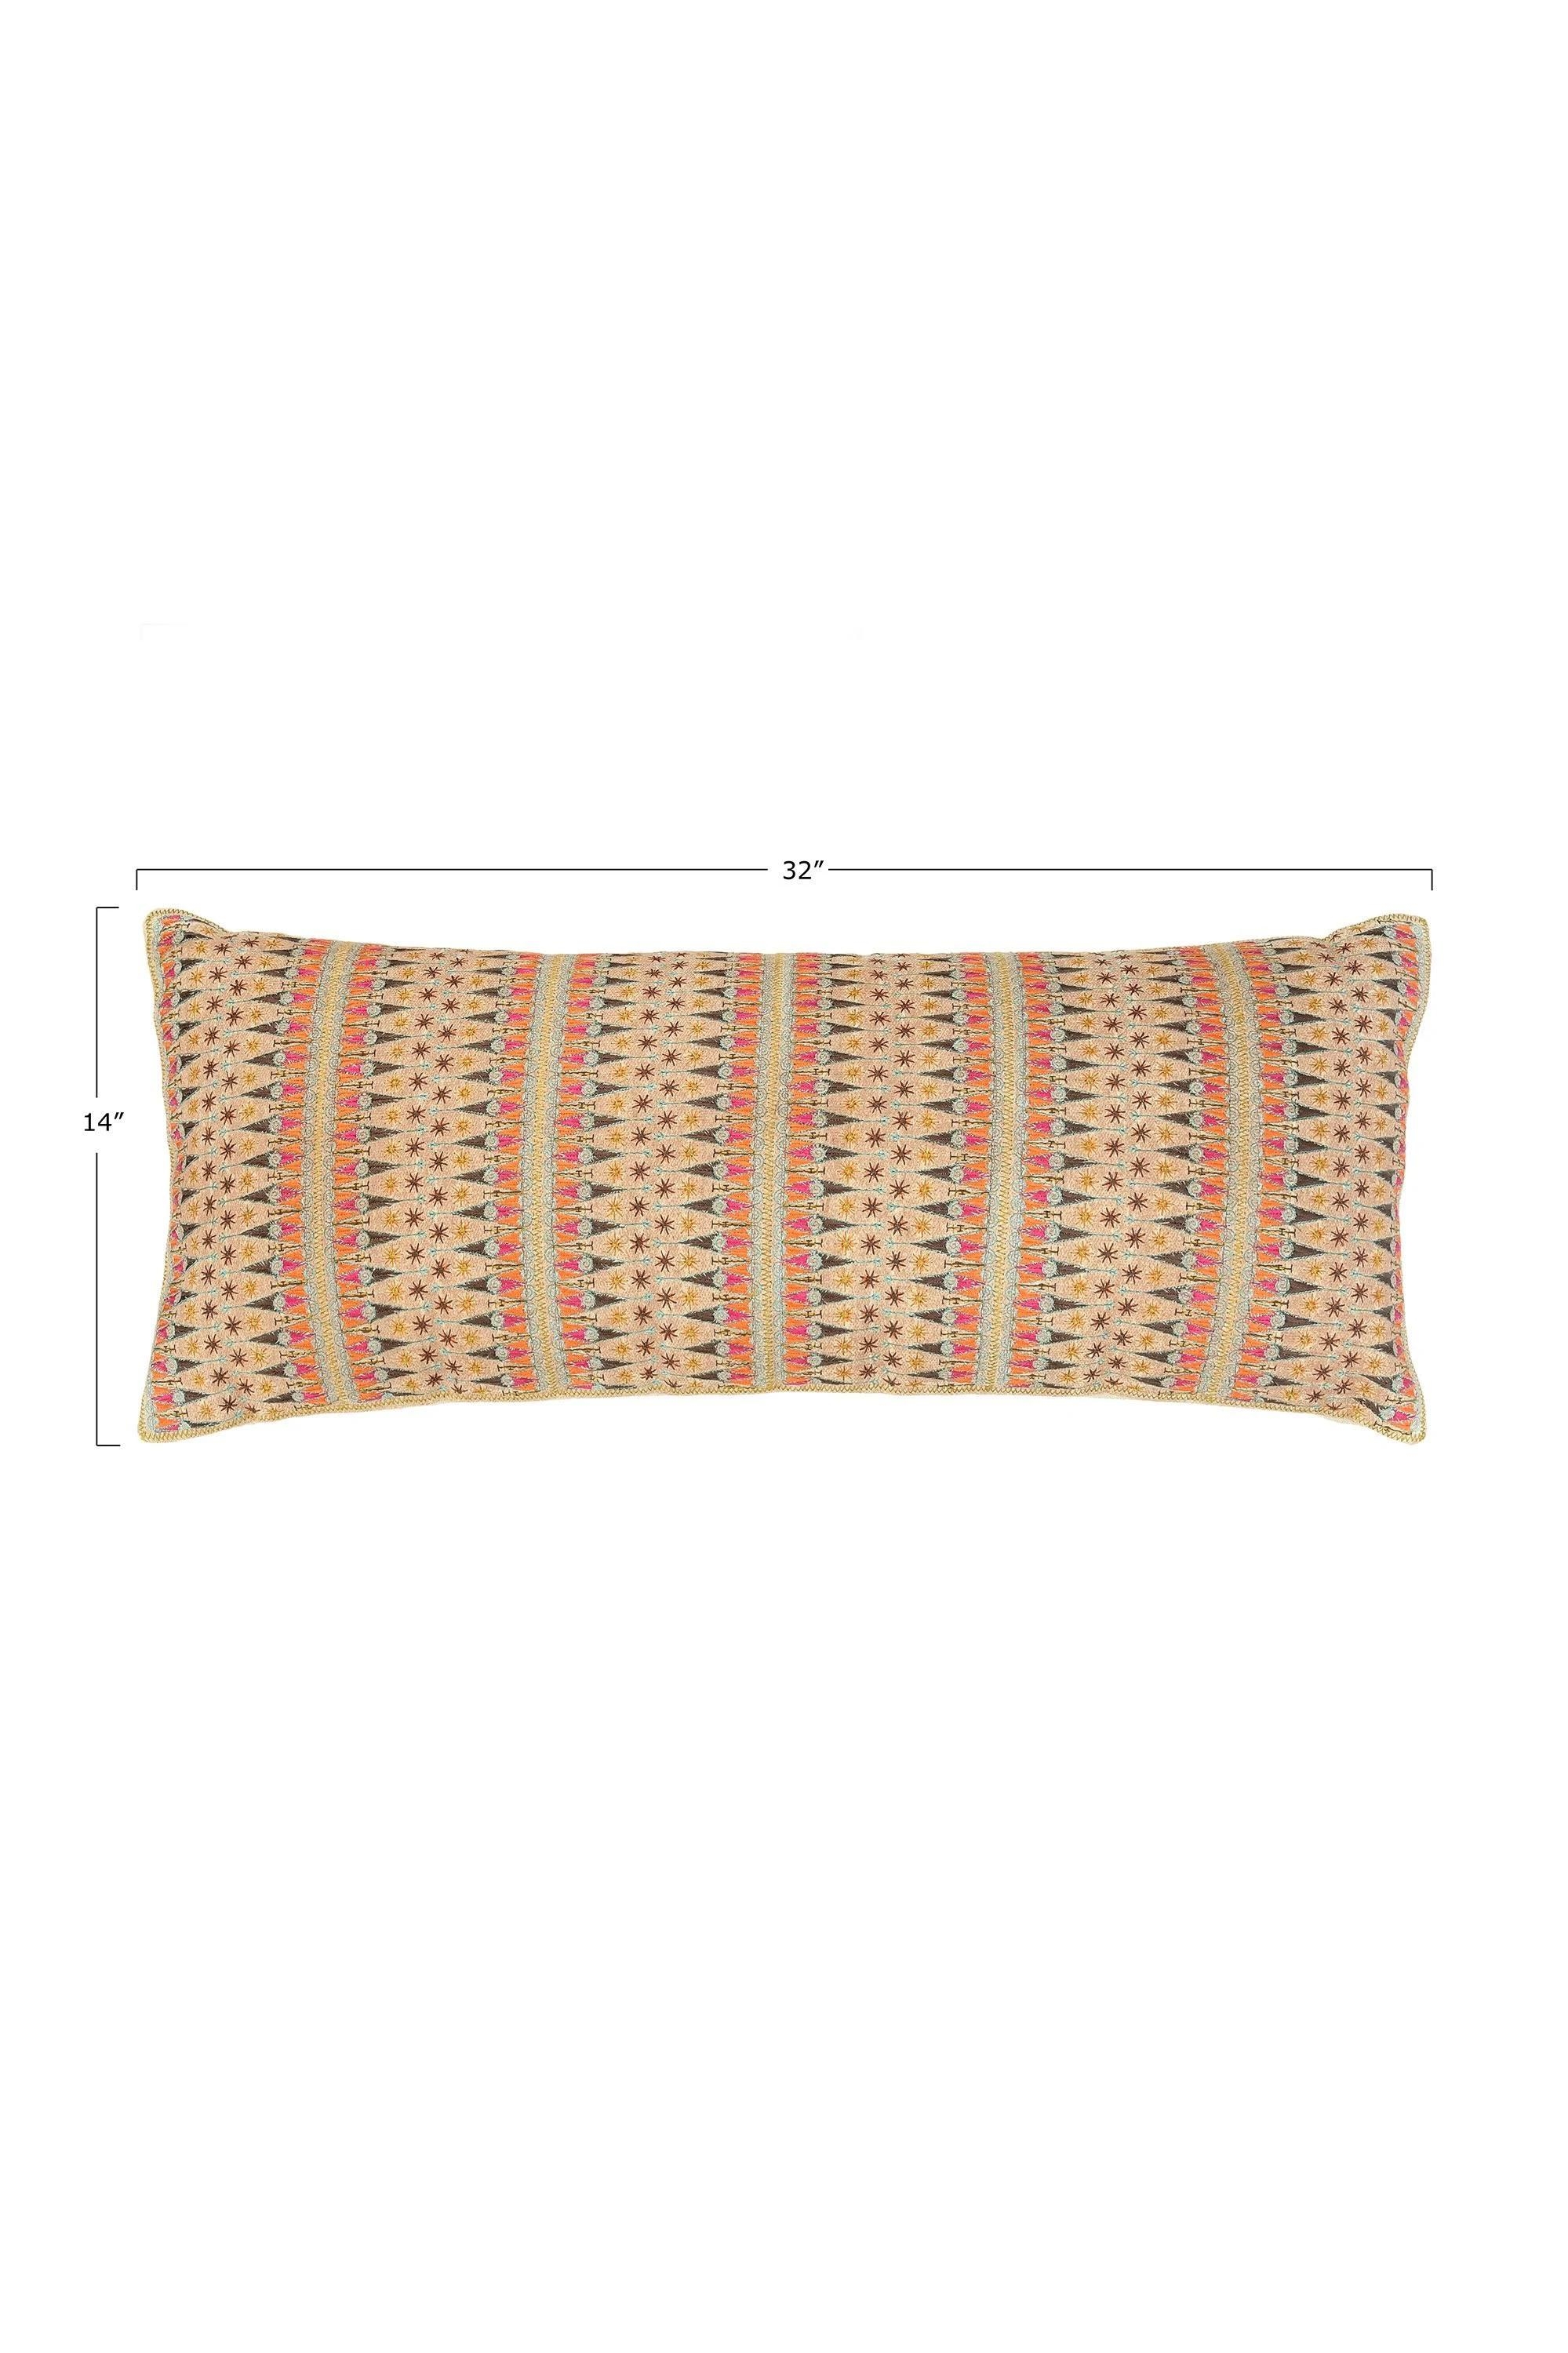 Kason Lumbar Pillow, 32" x 14" - Image 1